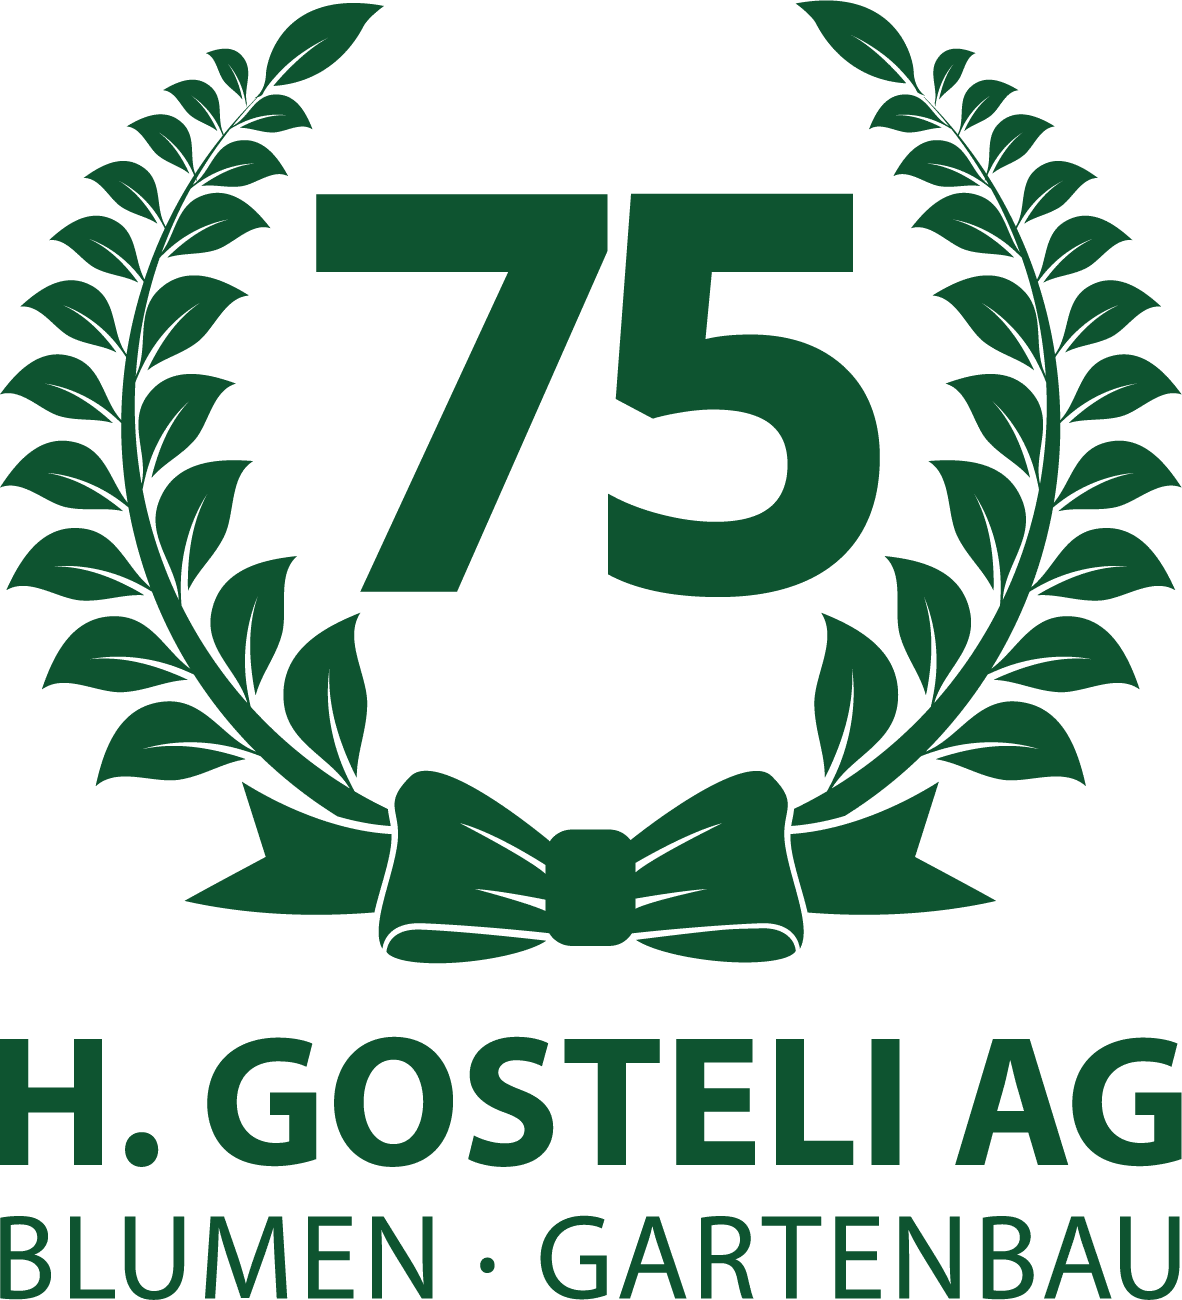 H. Gosteli AG